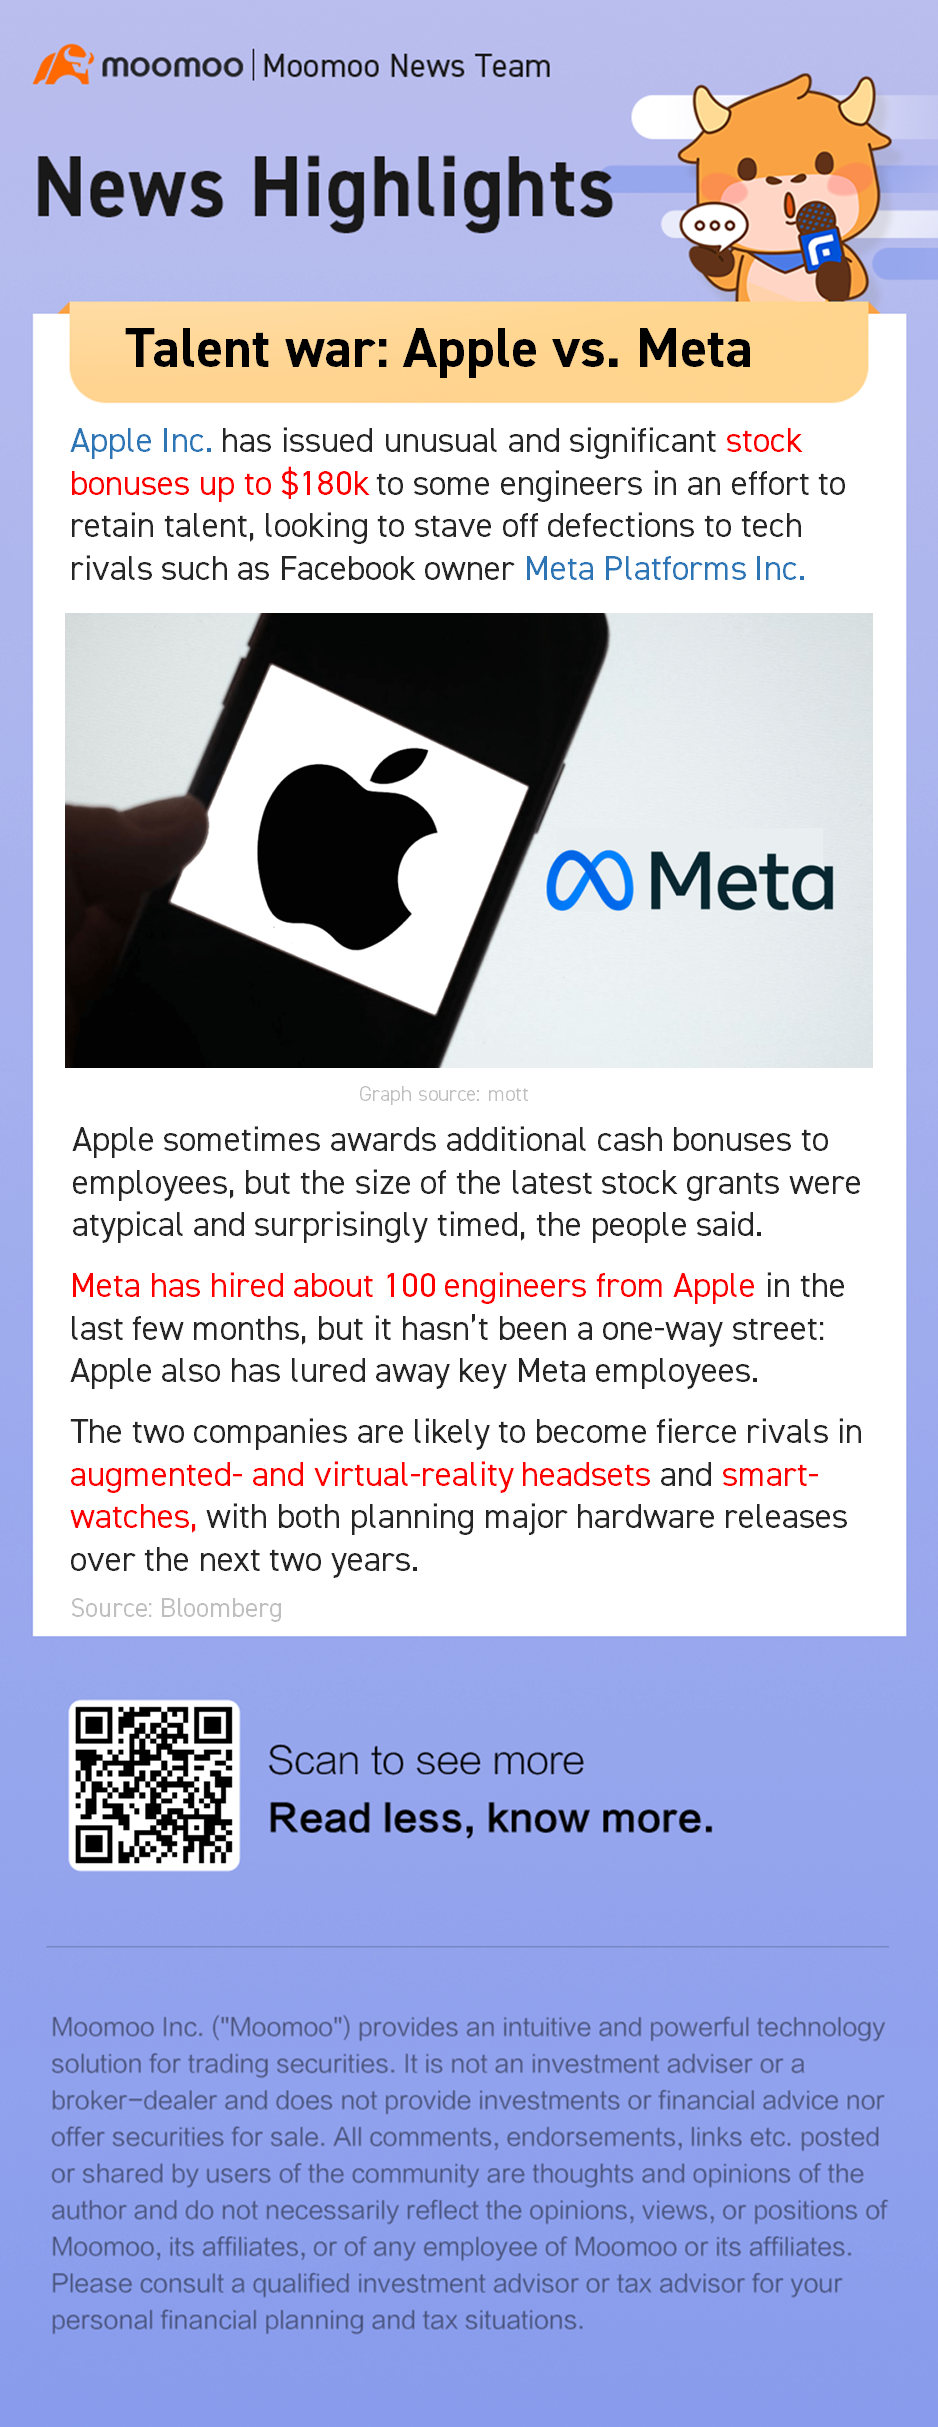 Talent war: Apple vs. Meta